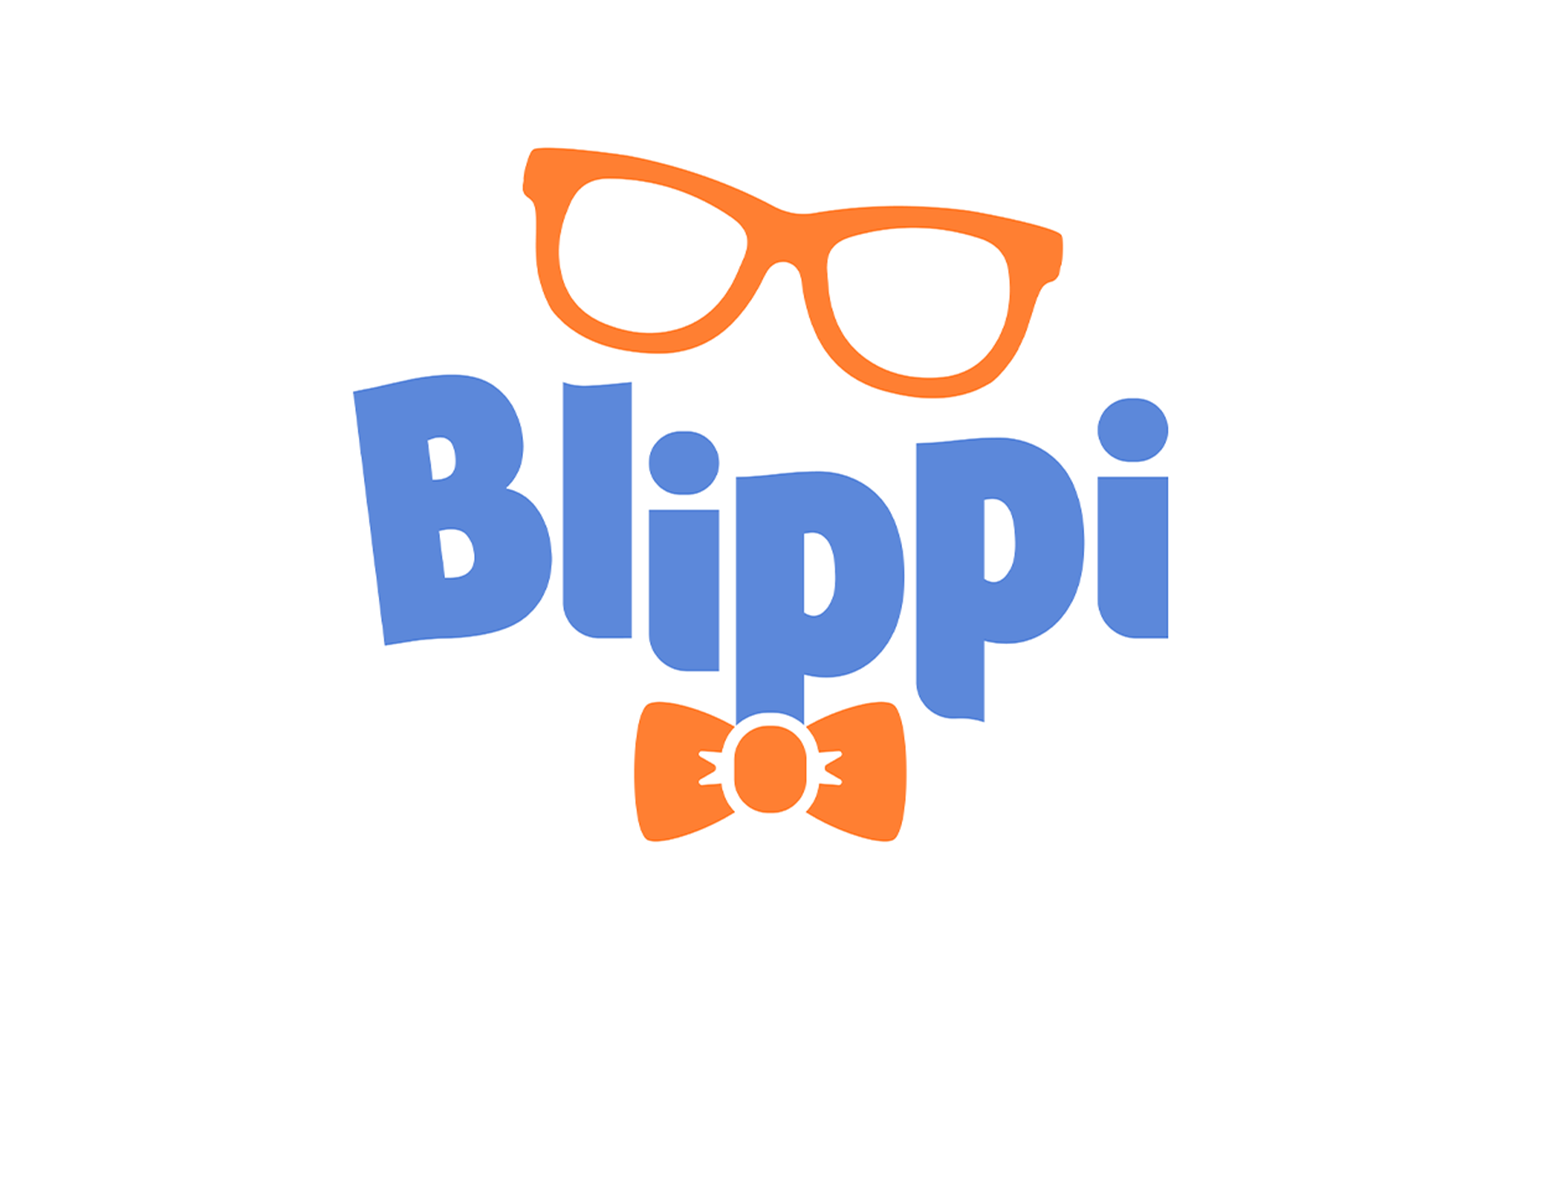 Blippi The Wonderful World Tour